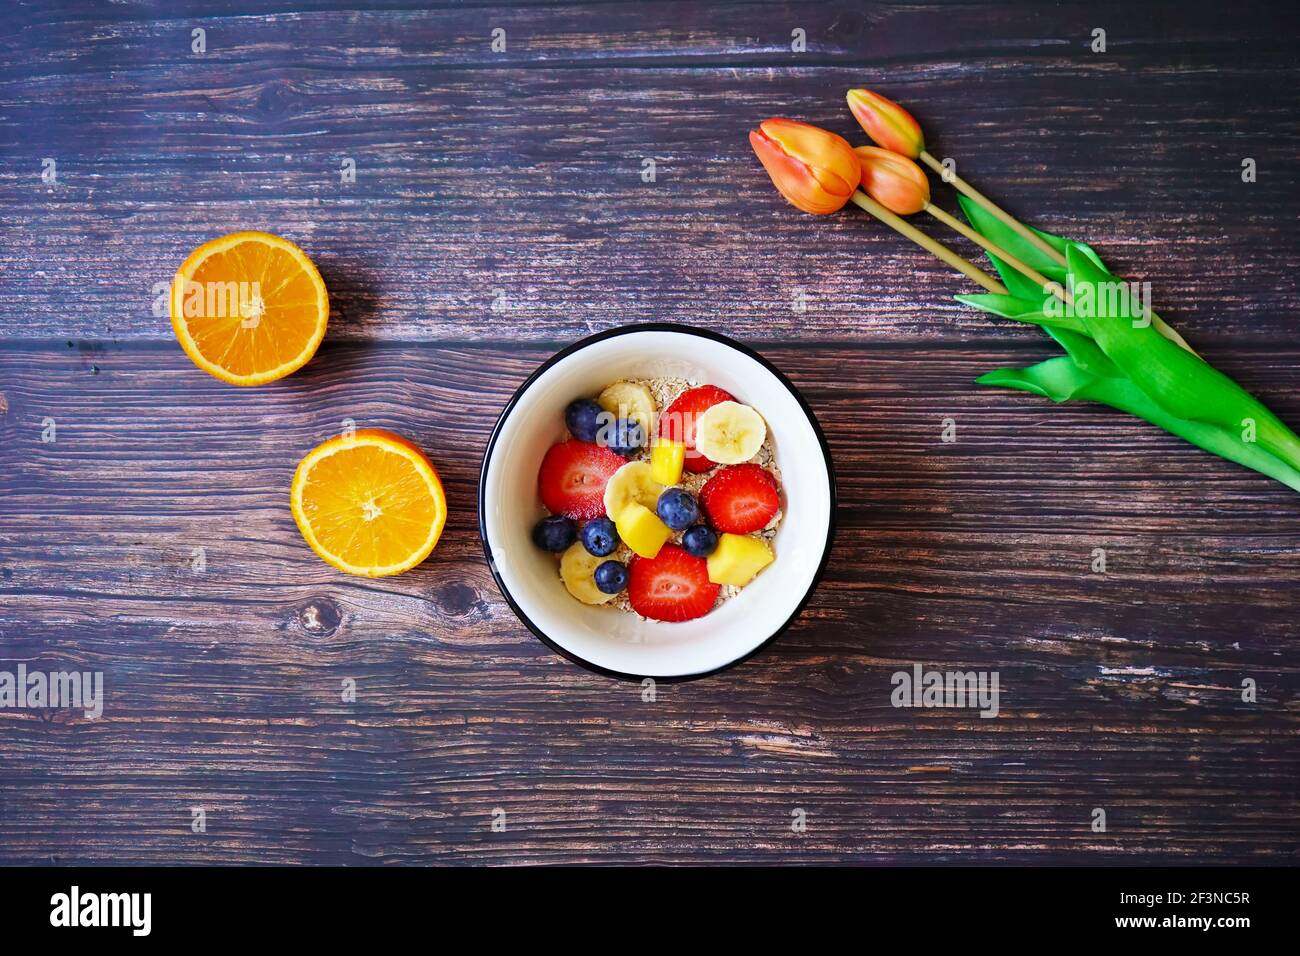 Eine Müslischale mit frischen Früchten (Erdbeere, Banane, Heidelbeere, Mango) und einer Orange auf einem hölzernen Frühstückstisch. Orangefarbene Tulpen zur Dekoration. Stockfoto